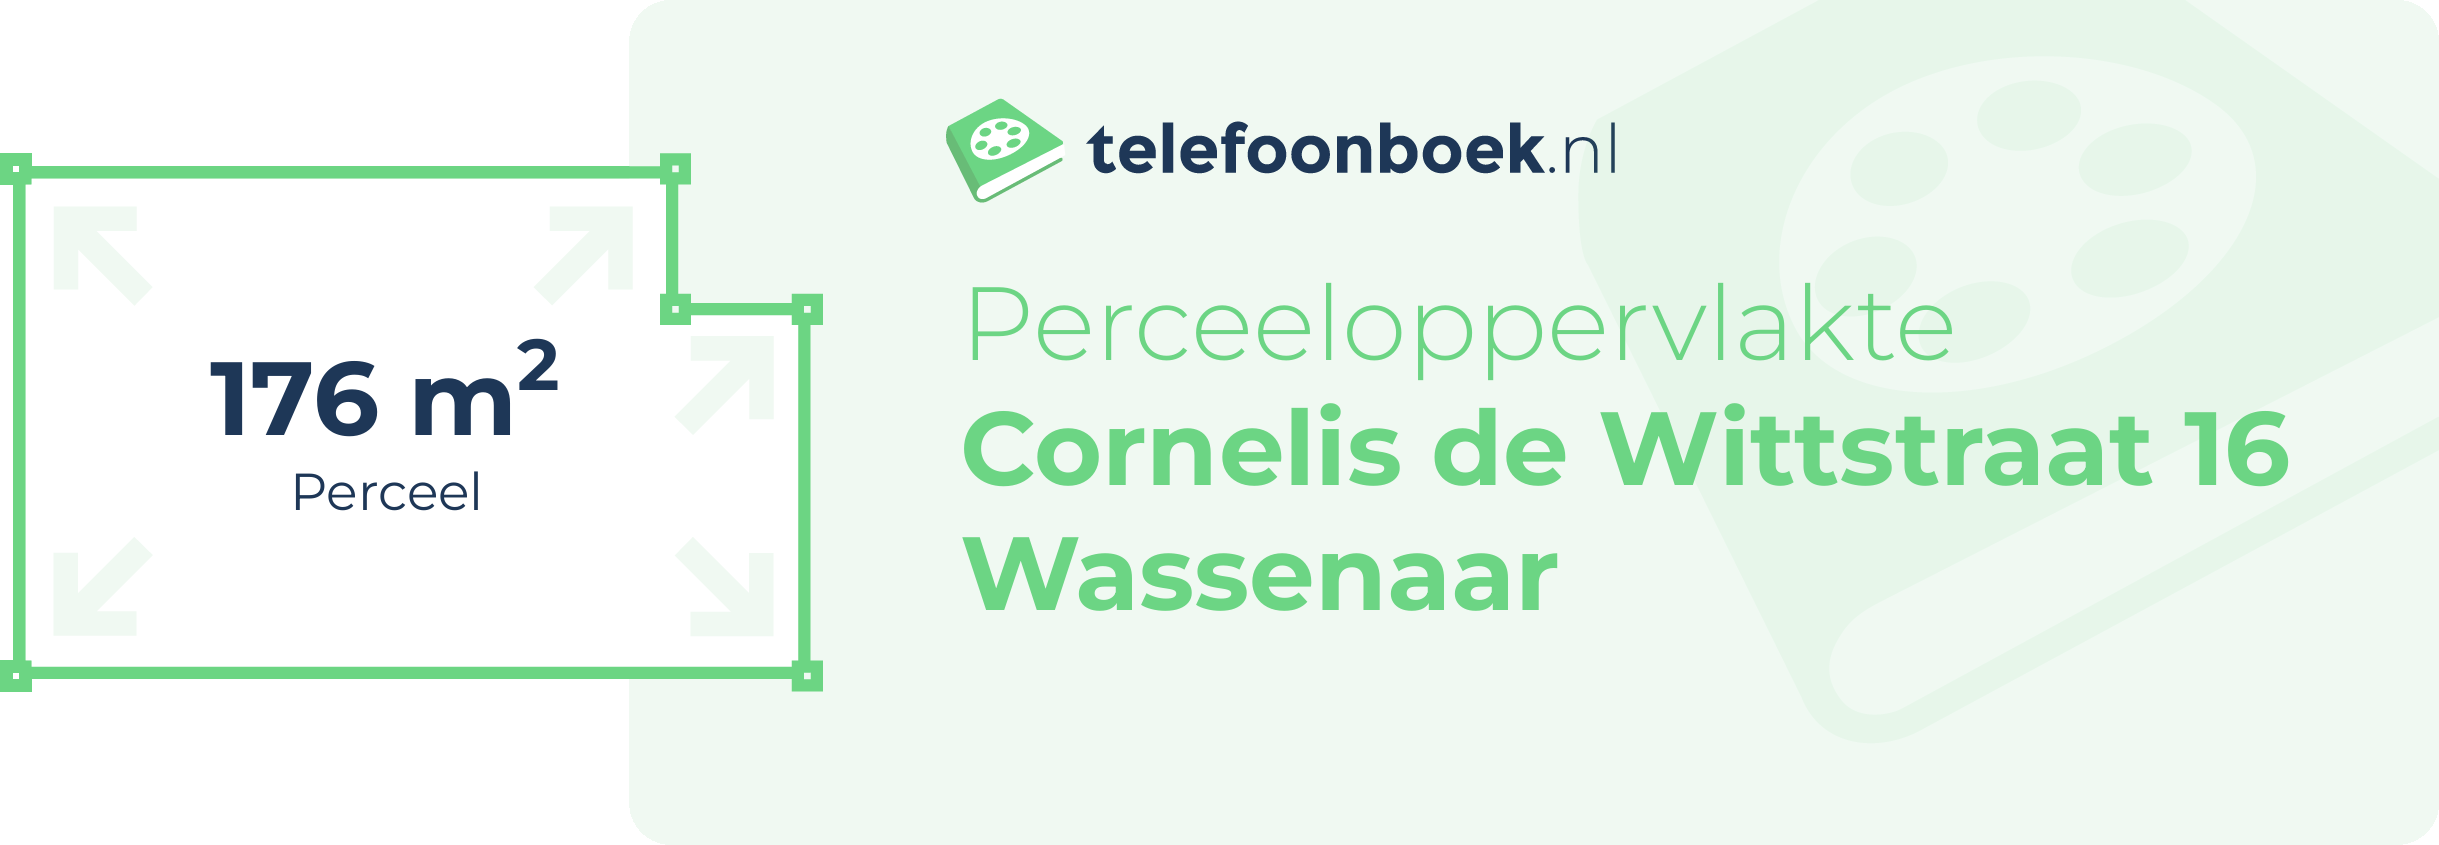 Perceeloppervlakte Cornelis De Wittstraat 16 Wassenaar